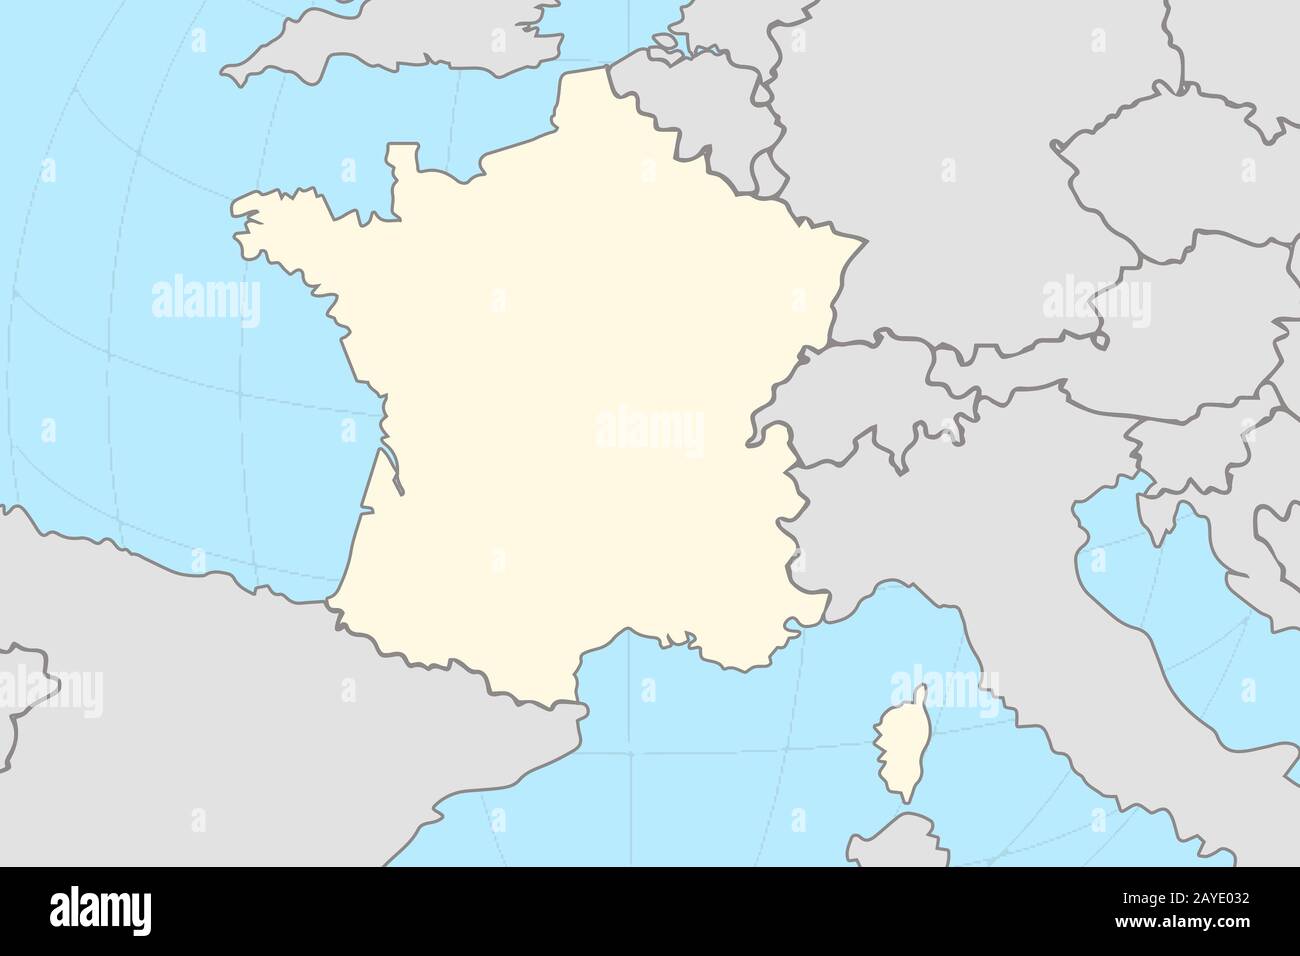 Teil der europäischen Weltkarte mit der französischen Karte, die das gelb markierte Land in grauer Farbe von anderen europäischen Ländern umgibt Stockfoto